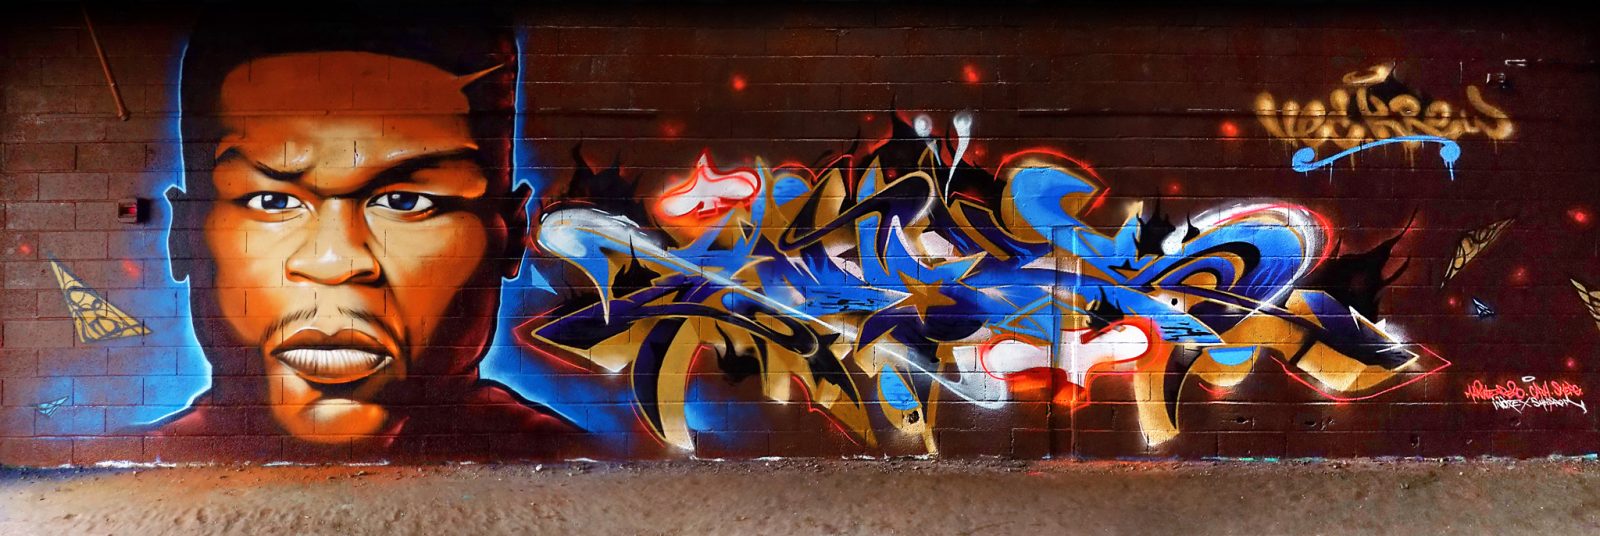 Graffiti avec YNOXE à Toulouse